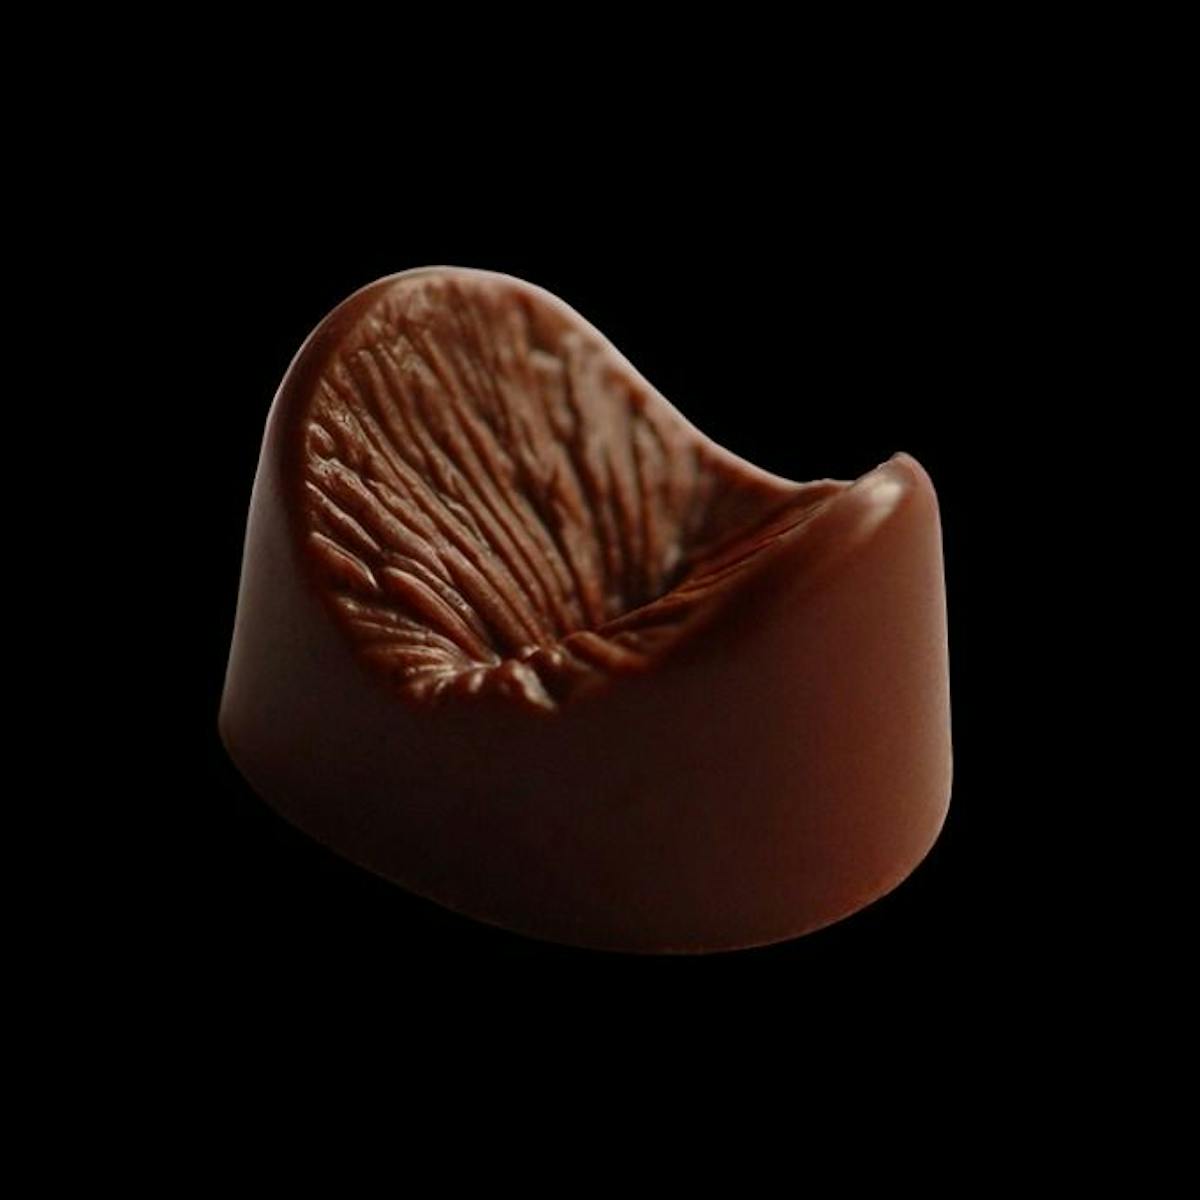 Cet anus en chocolat est aussi disponible en bronze - Le Matin